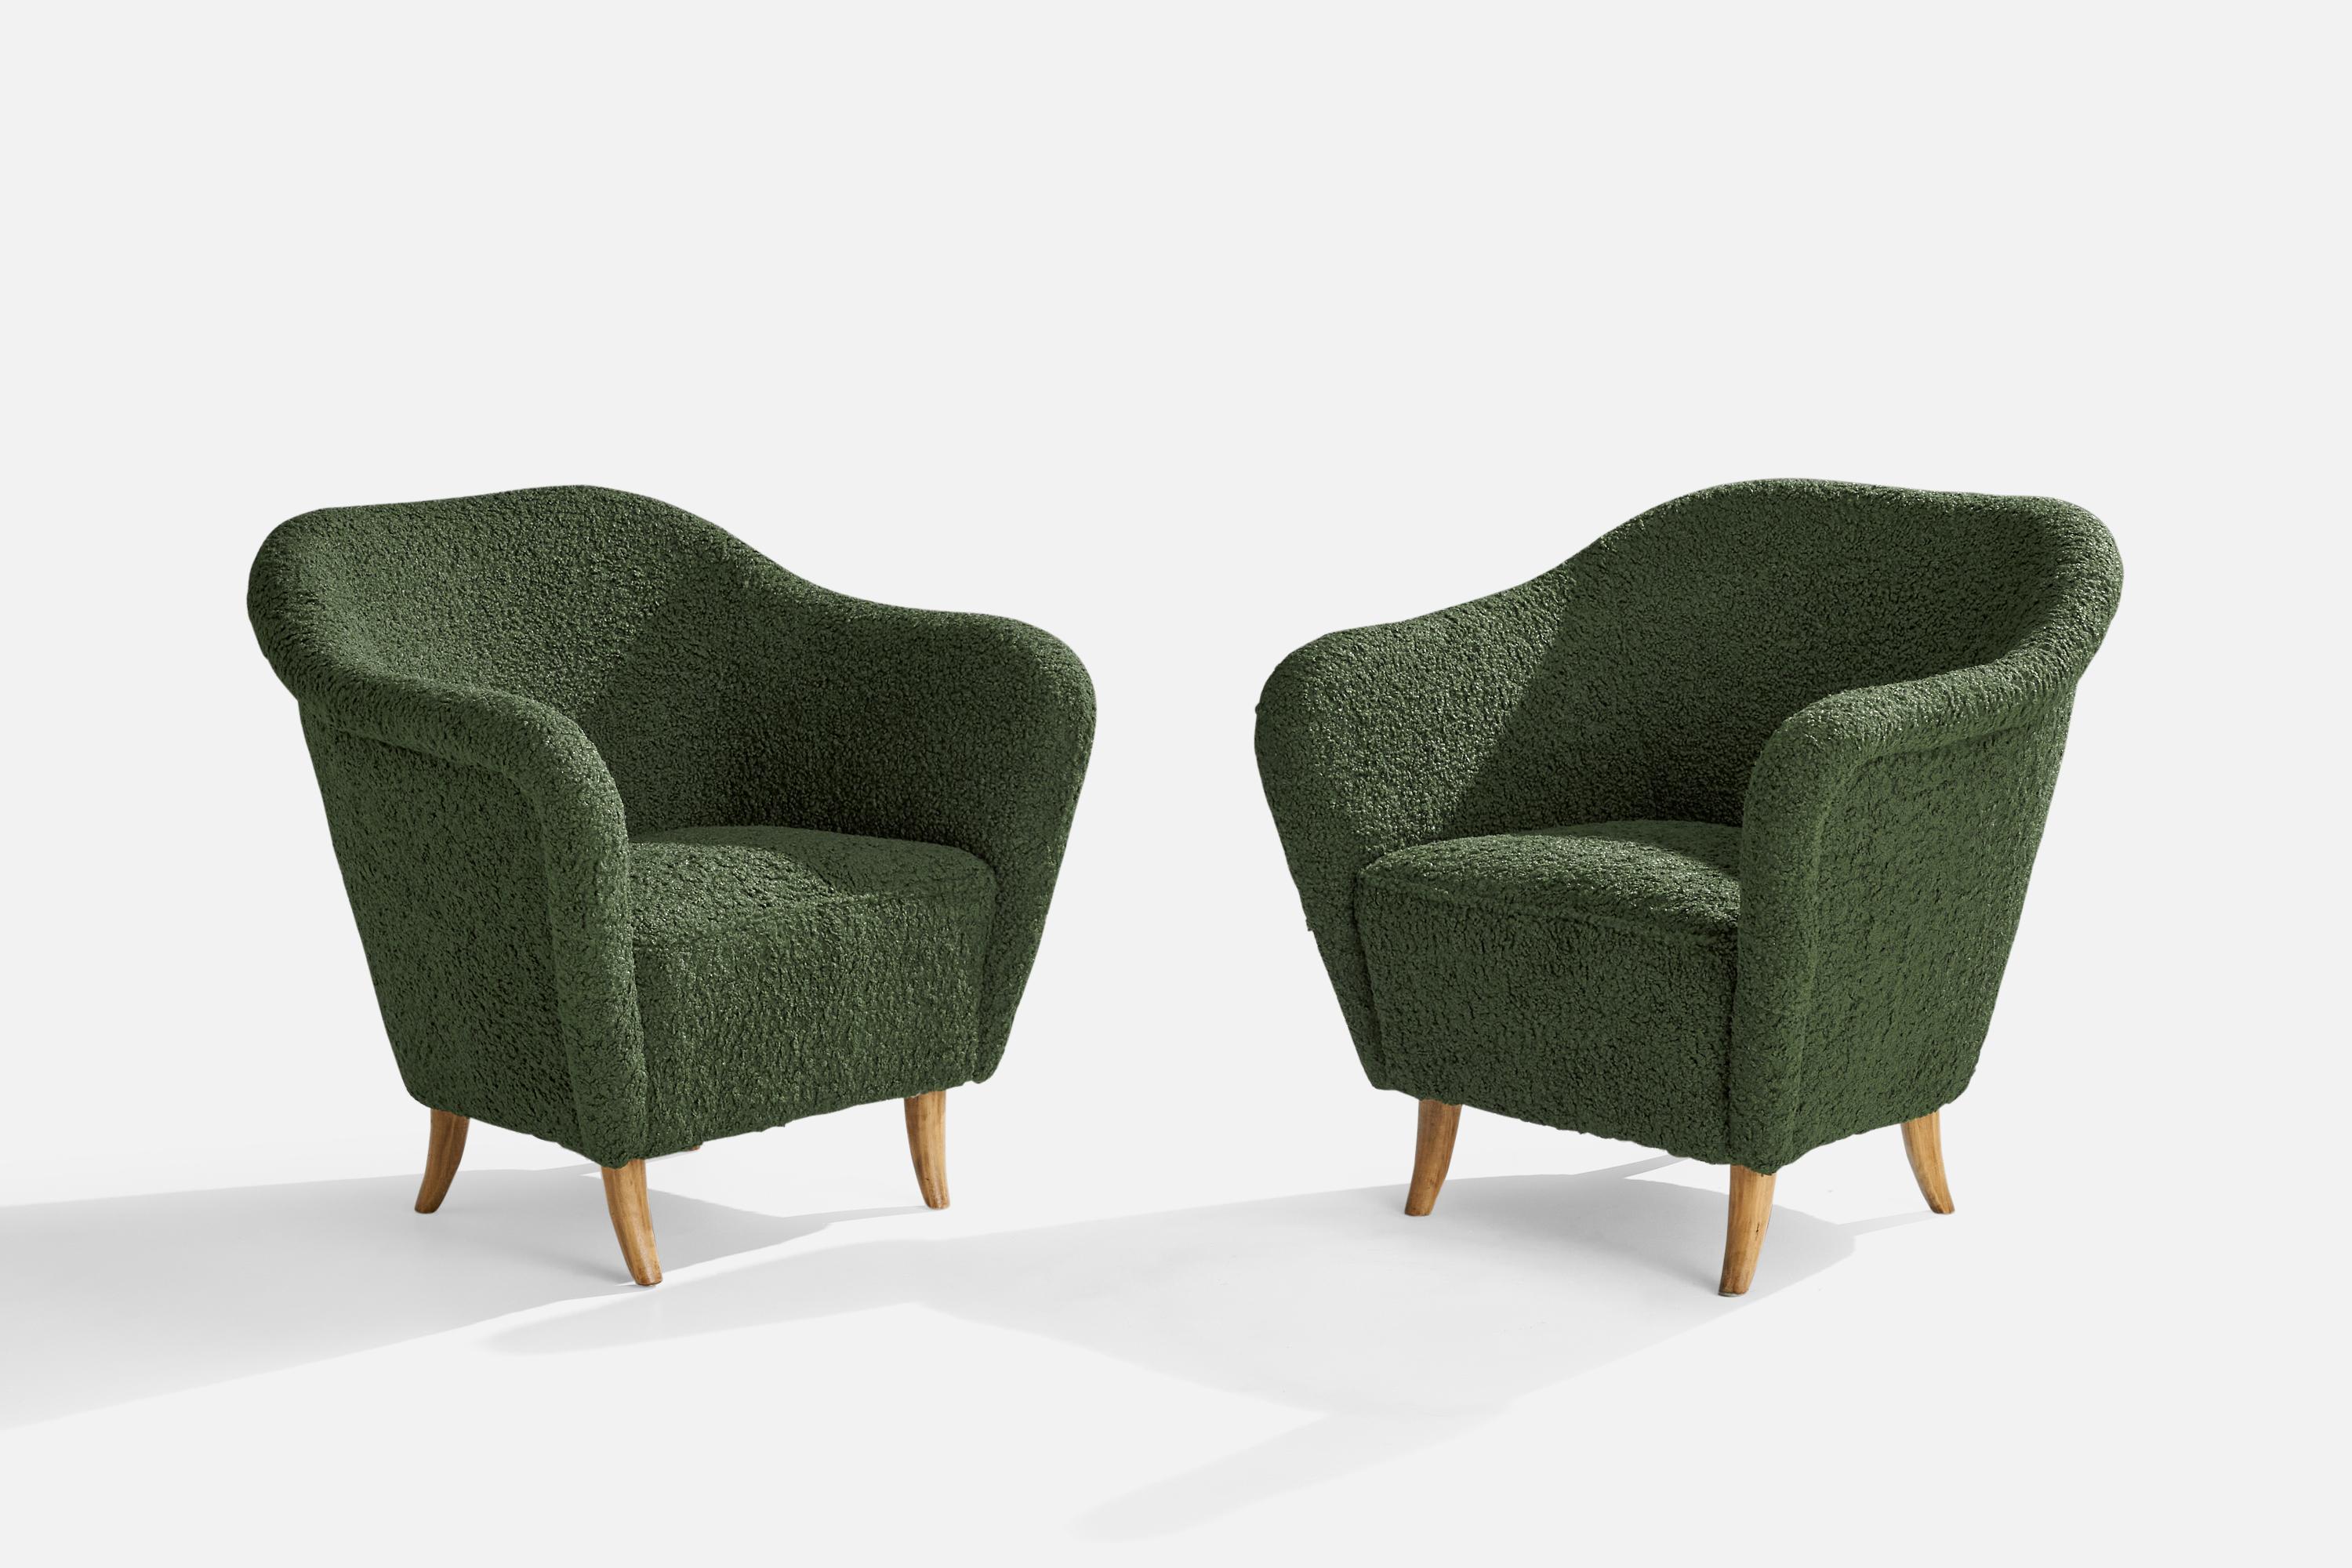 Paire de chaises longues en tissu bouclé vert et en bouleau, conçues et produites en Finlande, années 1940.

Hauteur du siège 16.5